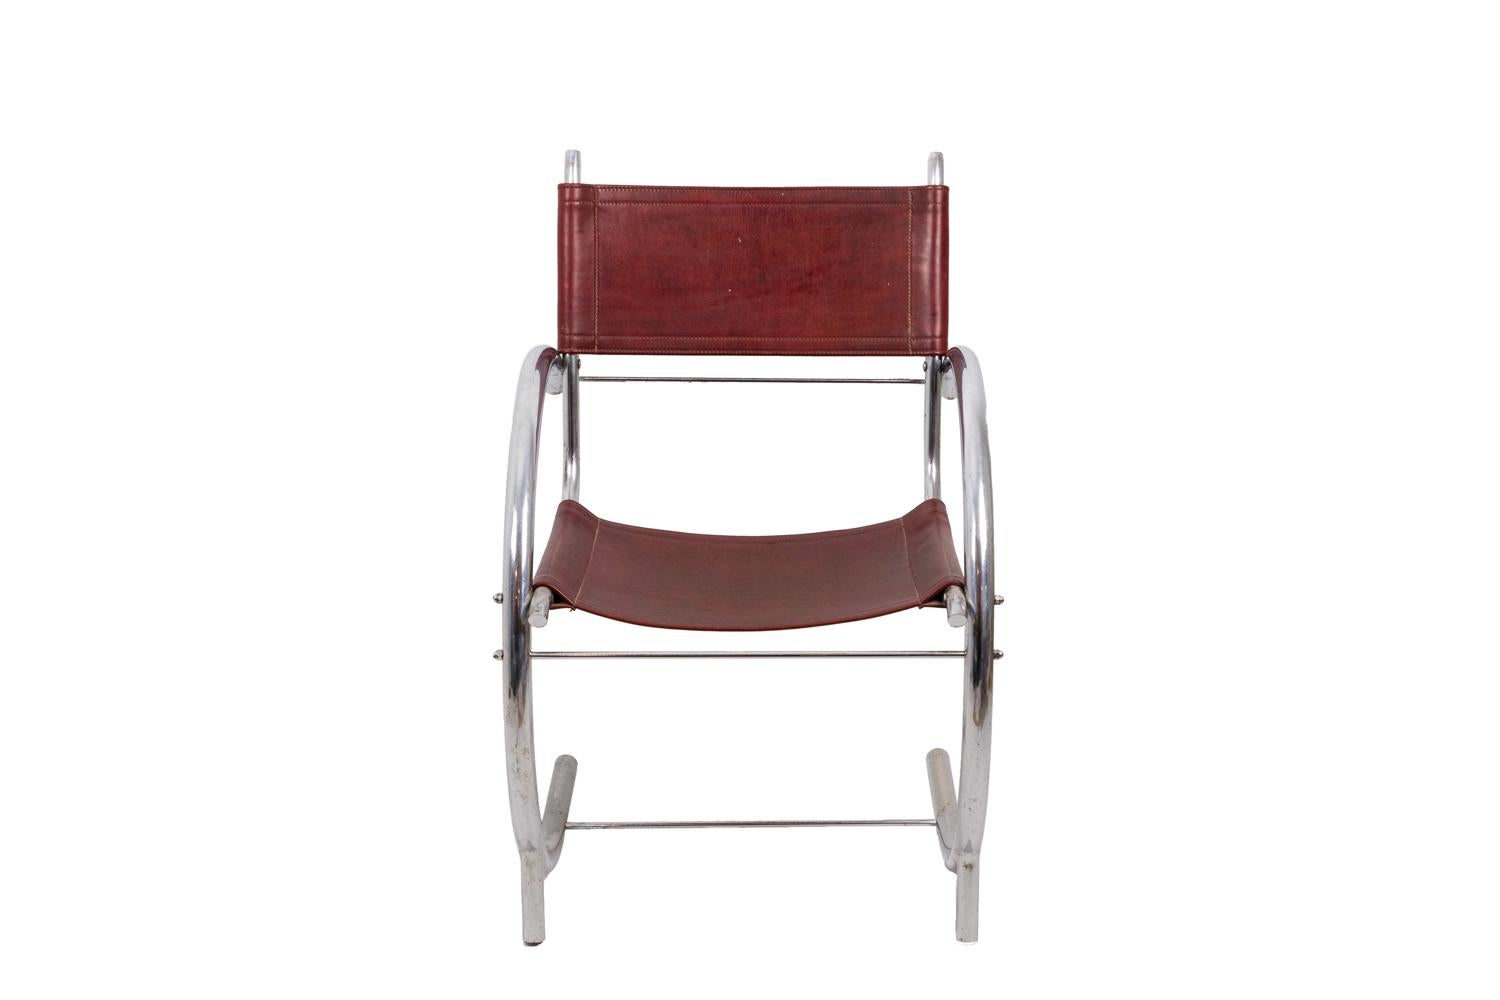 Sessel aus verchromtem Metall mit Beinen und Armen, die einen Halbkreis bilden. Die Beine sind durch eine Stocktrage miteinander verbunden. Sitz und Rückenlehne aus rotem Leder in rechteckiger Form.

Das Werk wurde in den 1930er Jahren realisiert.